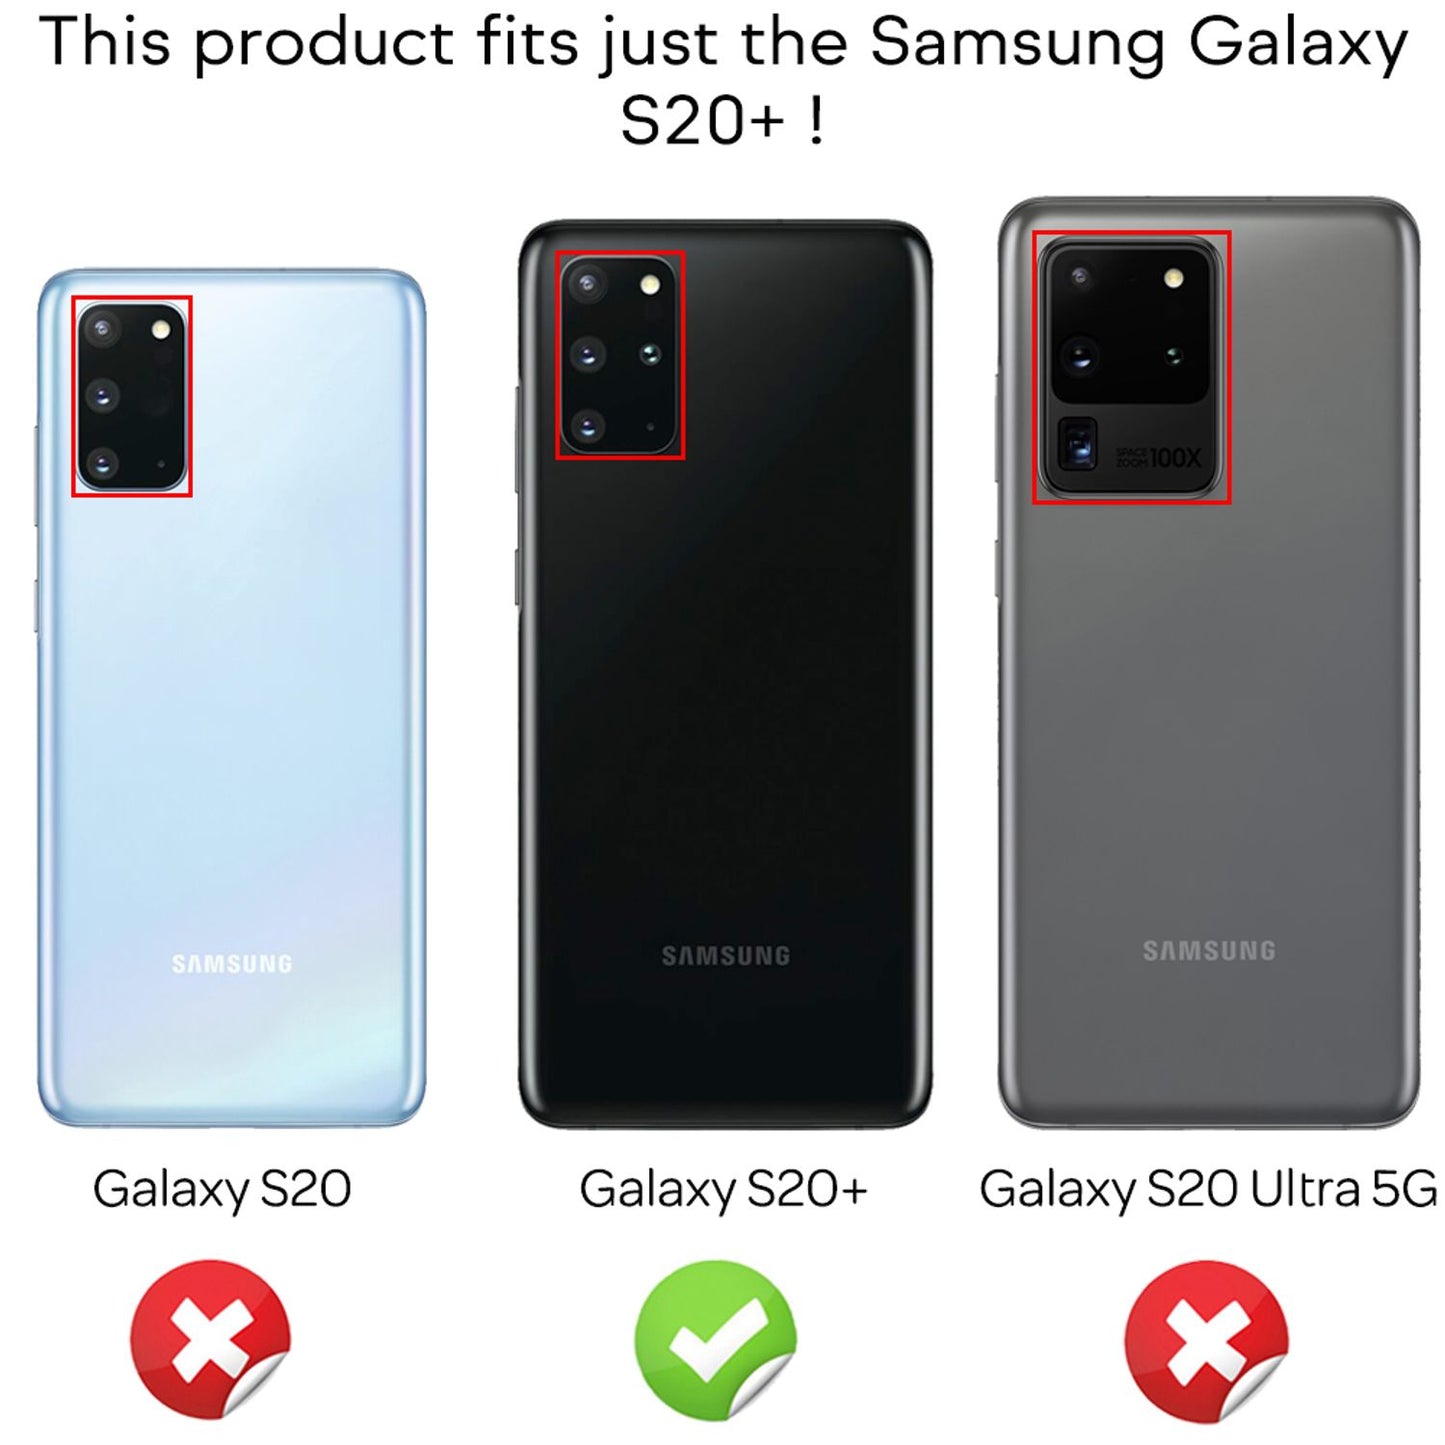 NALIA Handy Hülle für Samsung Galaxy S20 Plus, Silikon Schutz Case Cover Tasche